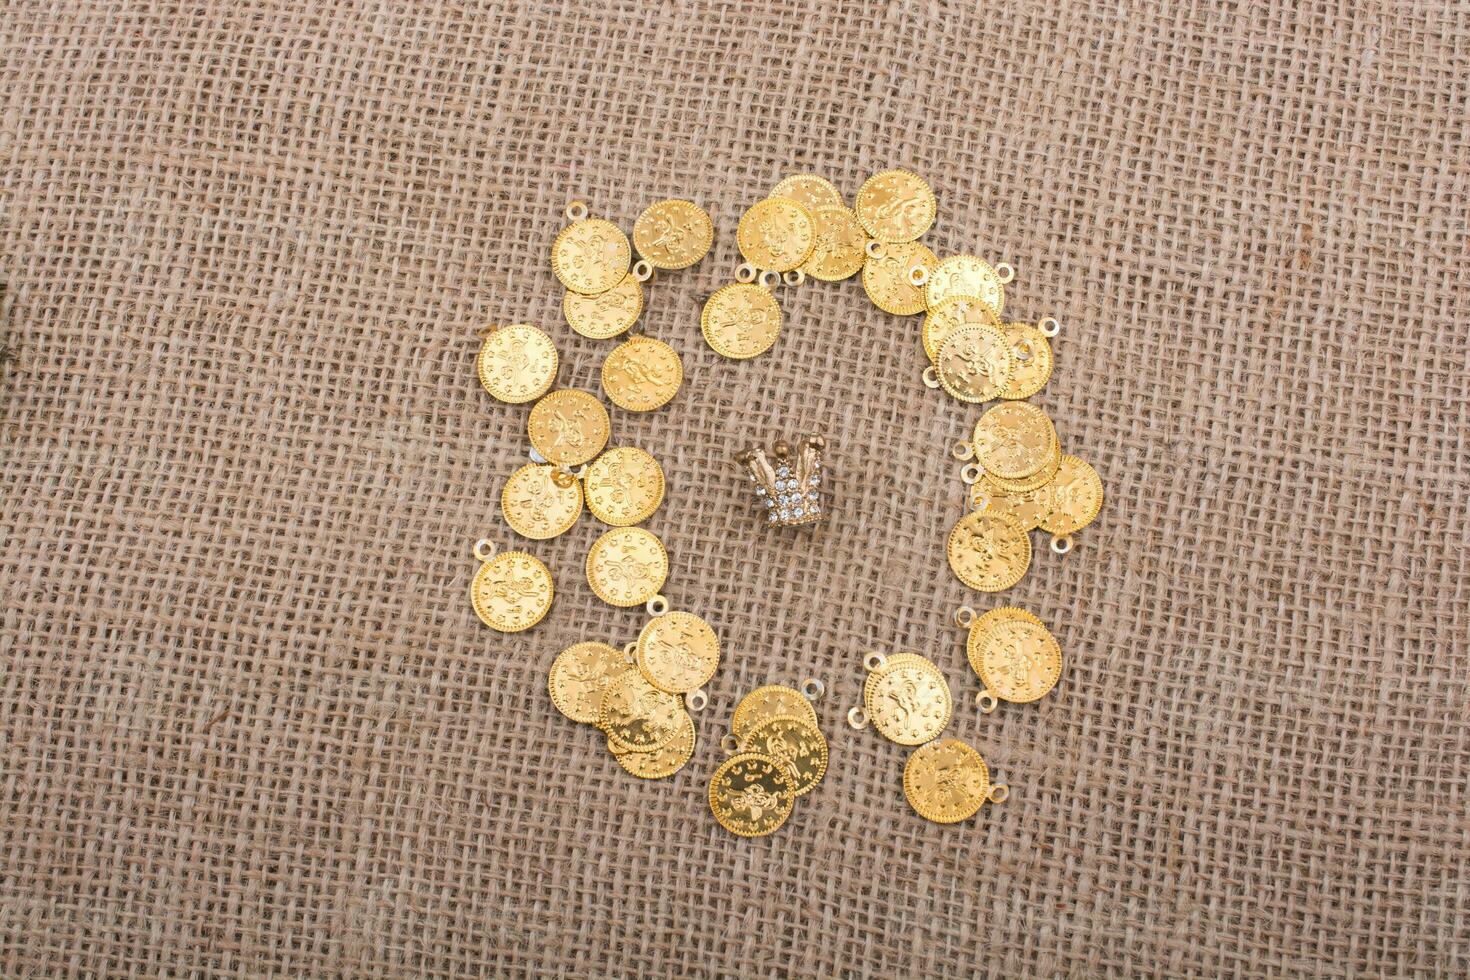 gefälschte Goldmünzen sind um die kleine Krone herum foto